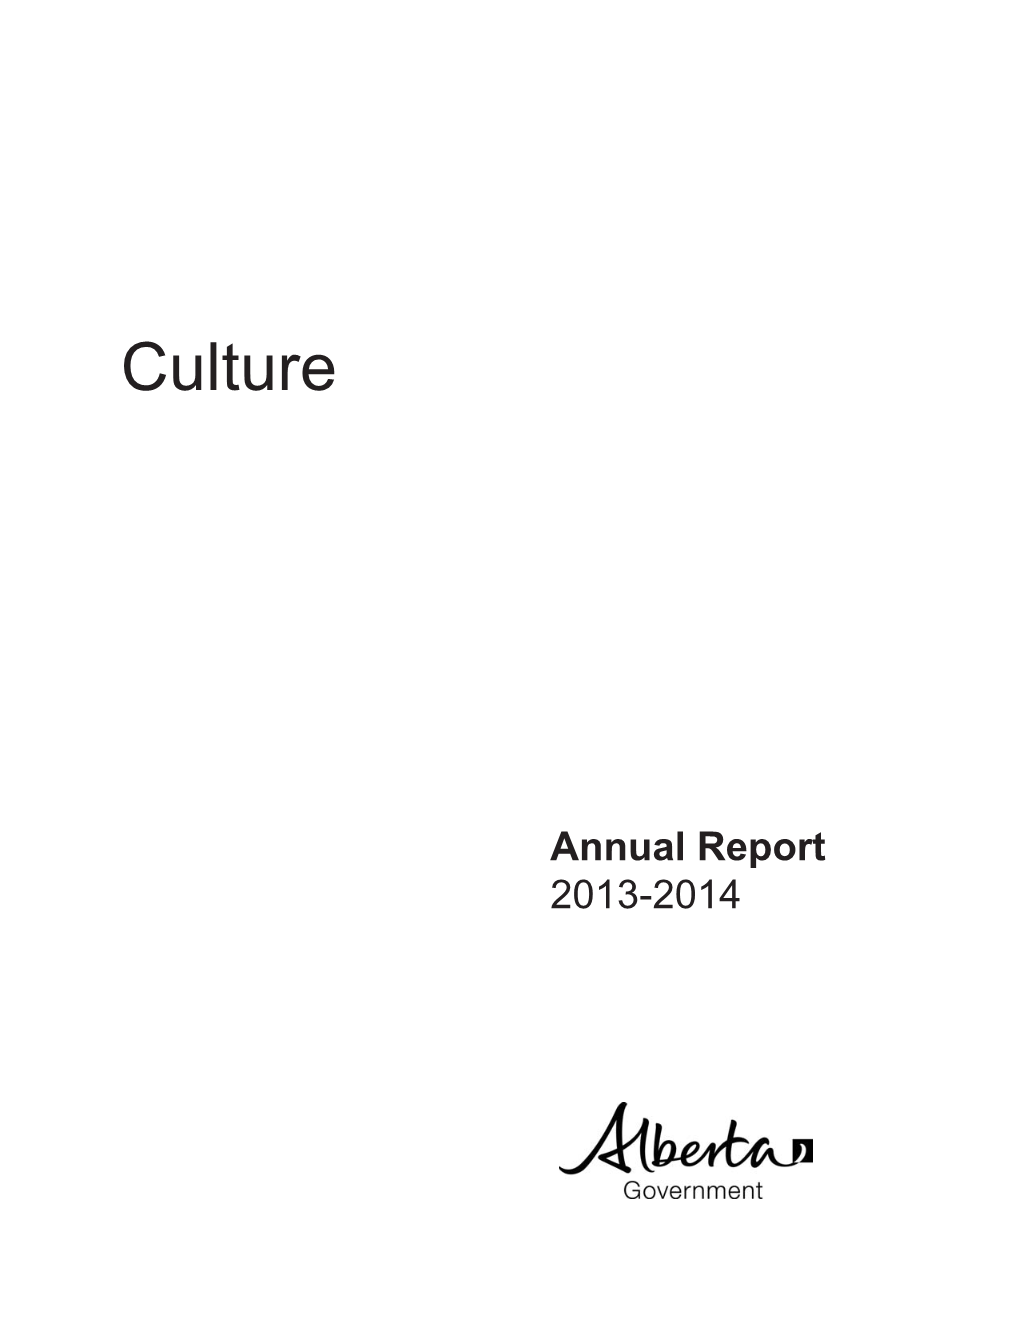 2013-14 Culture Annual Report